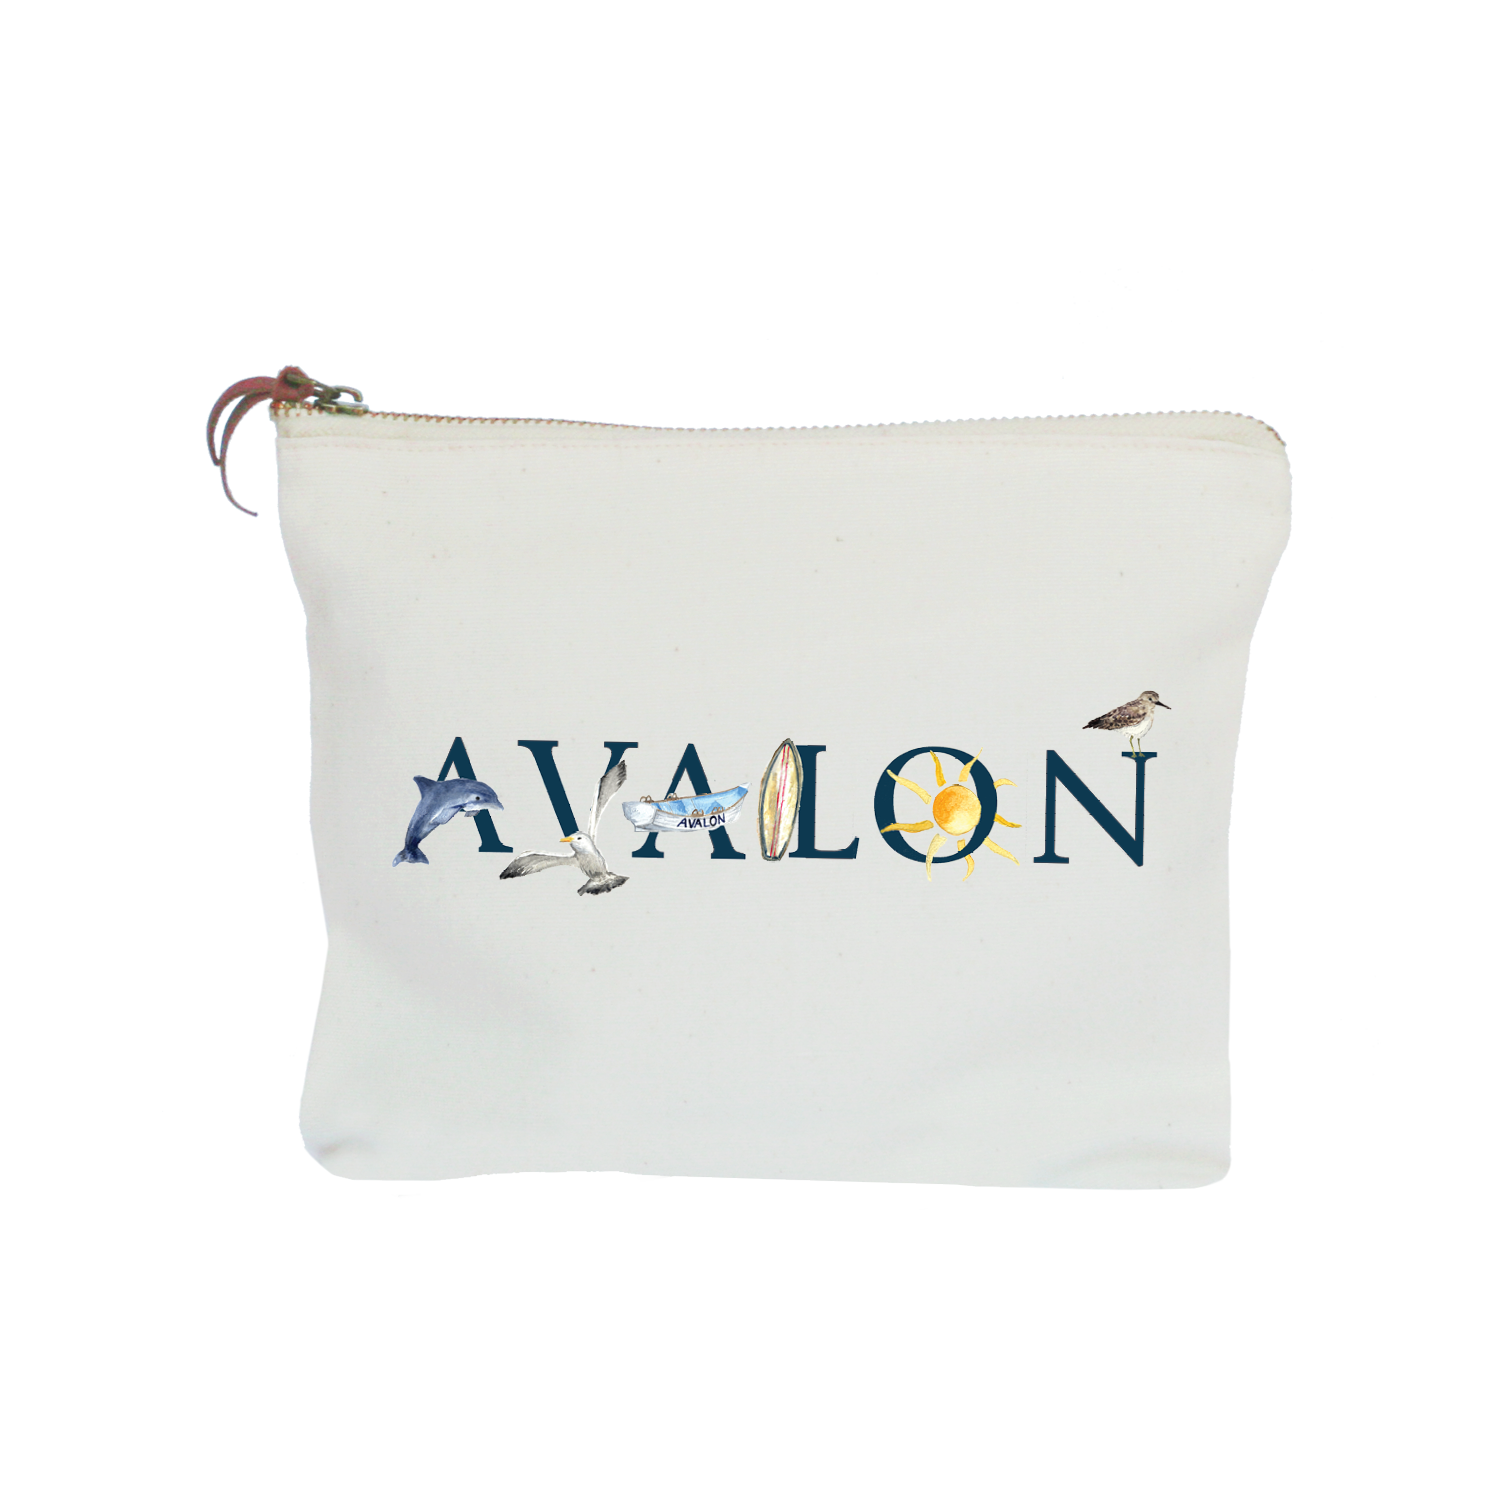 Avalon zipper pouch